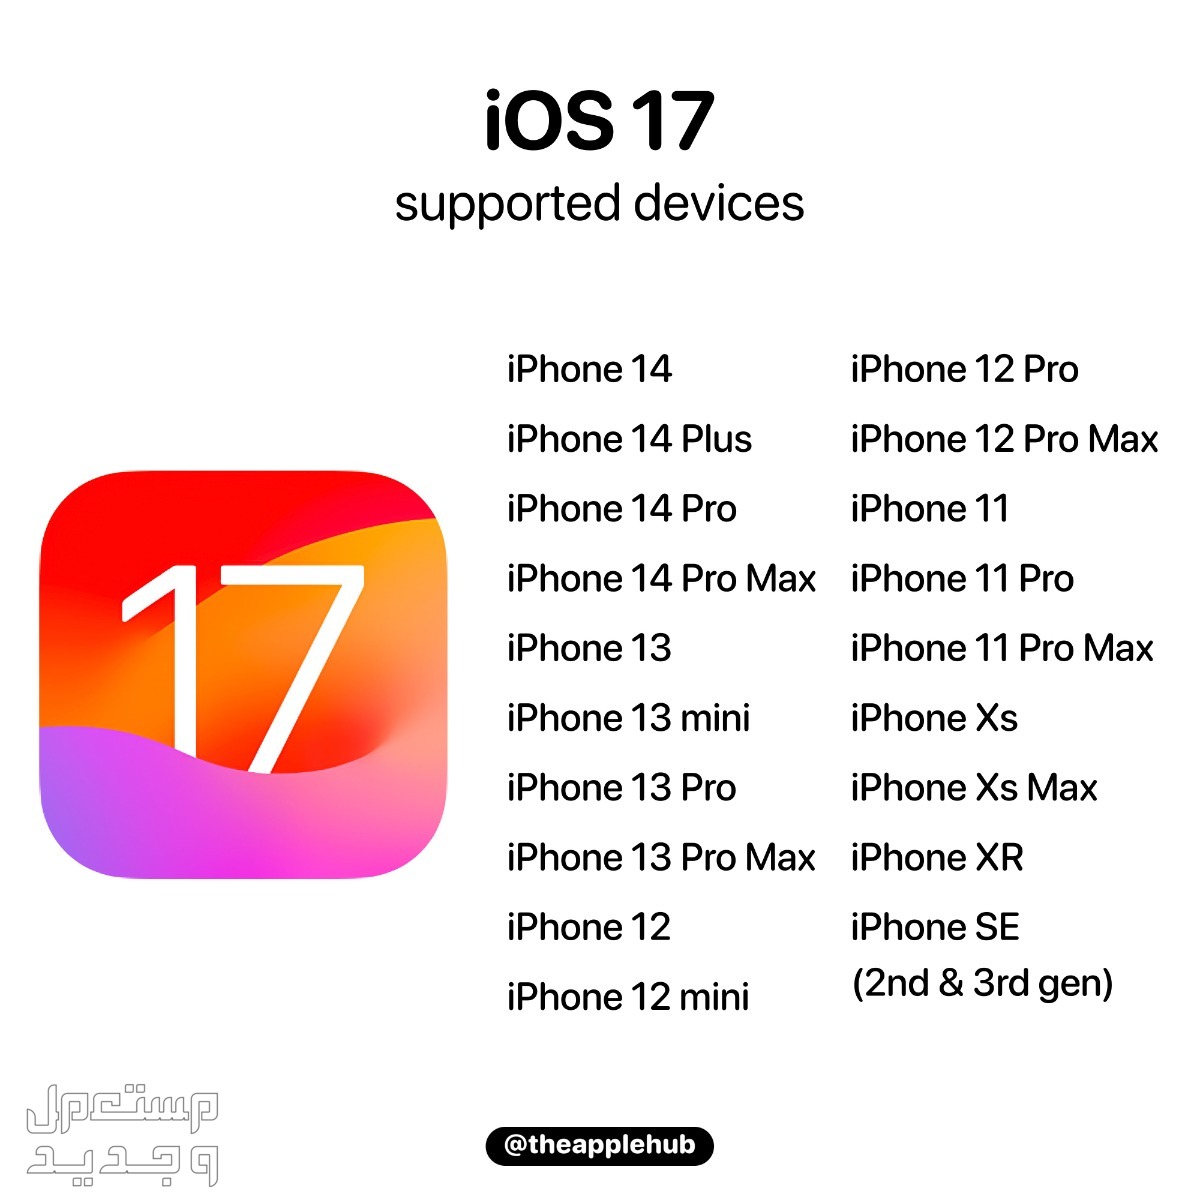 نظام iOS 17 لهواتف ايفون بمميزات جديدة تعرف عليها في الكويت